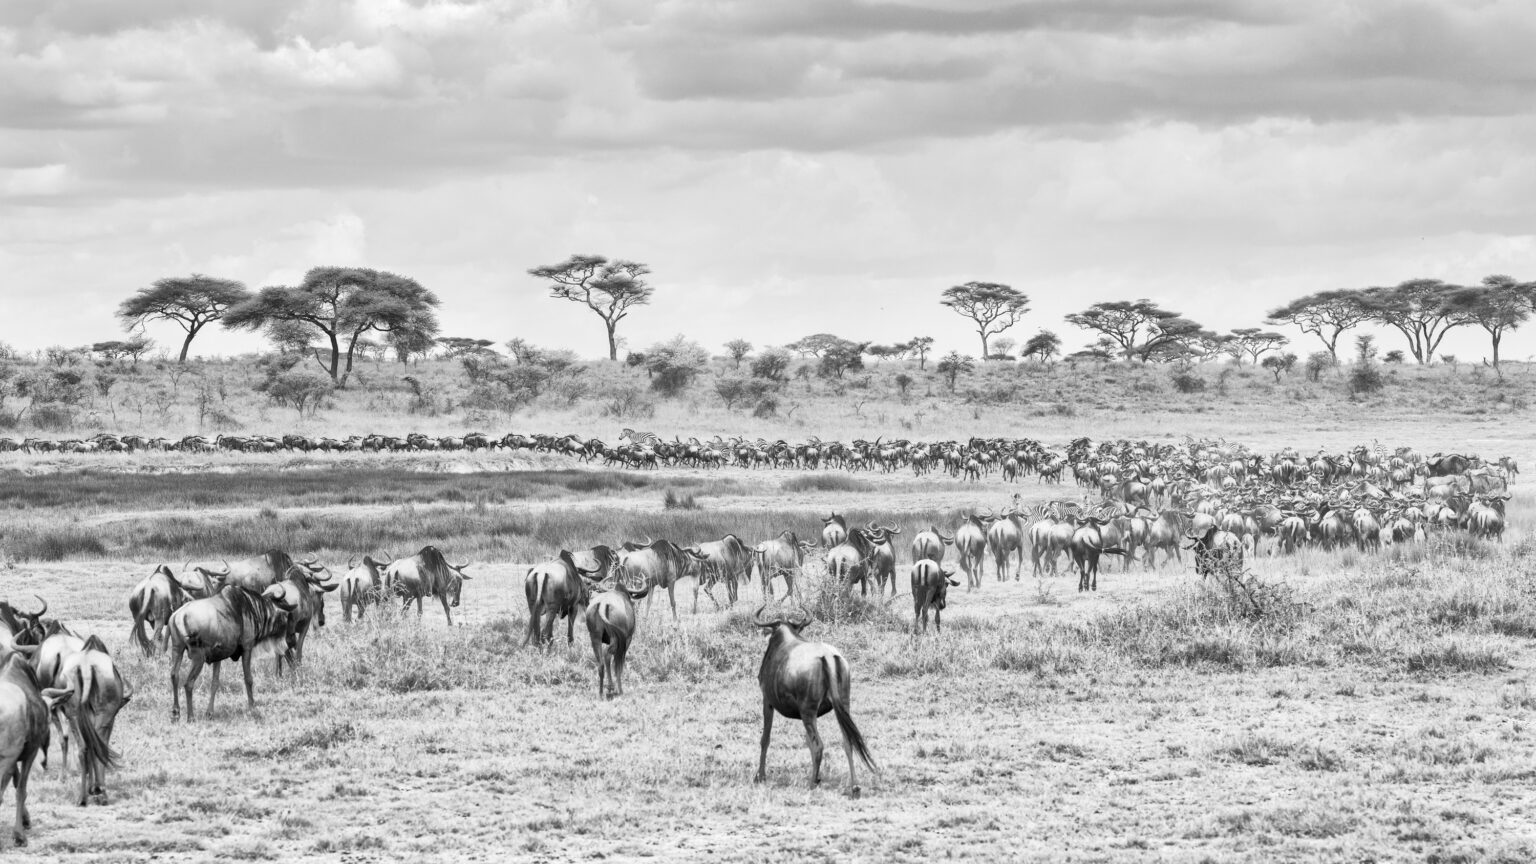 Wildebeet Migration